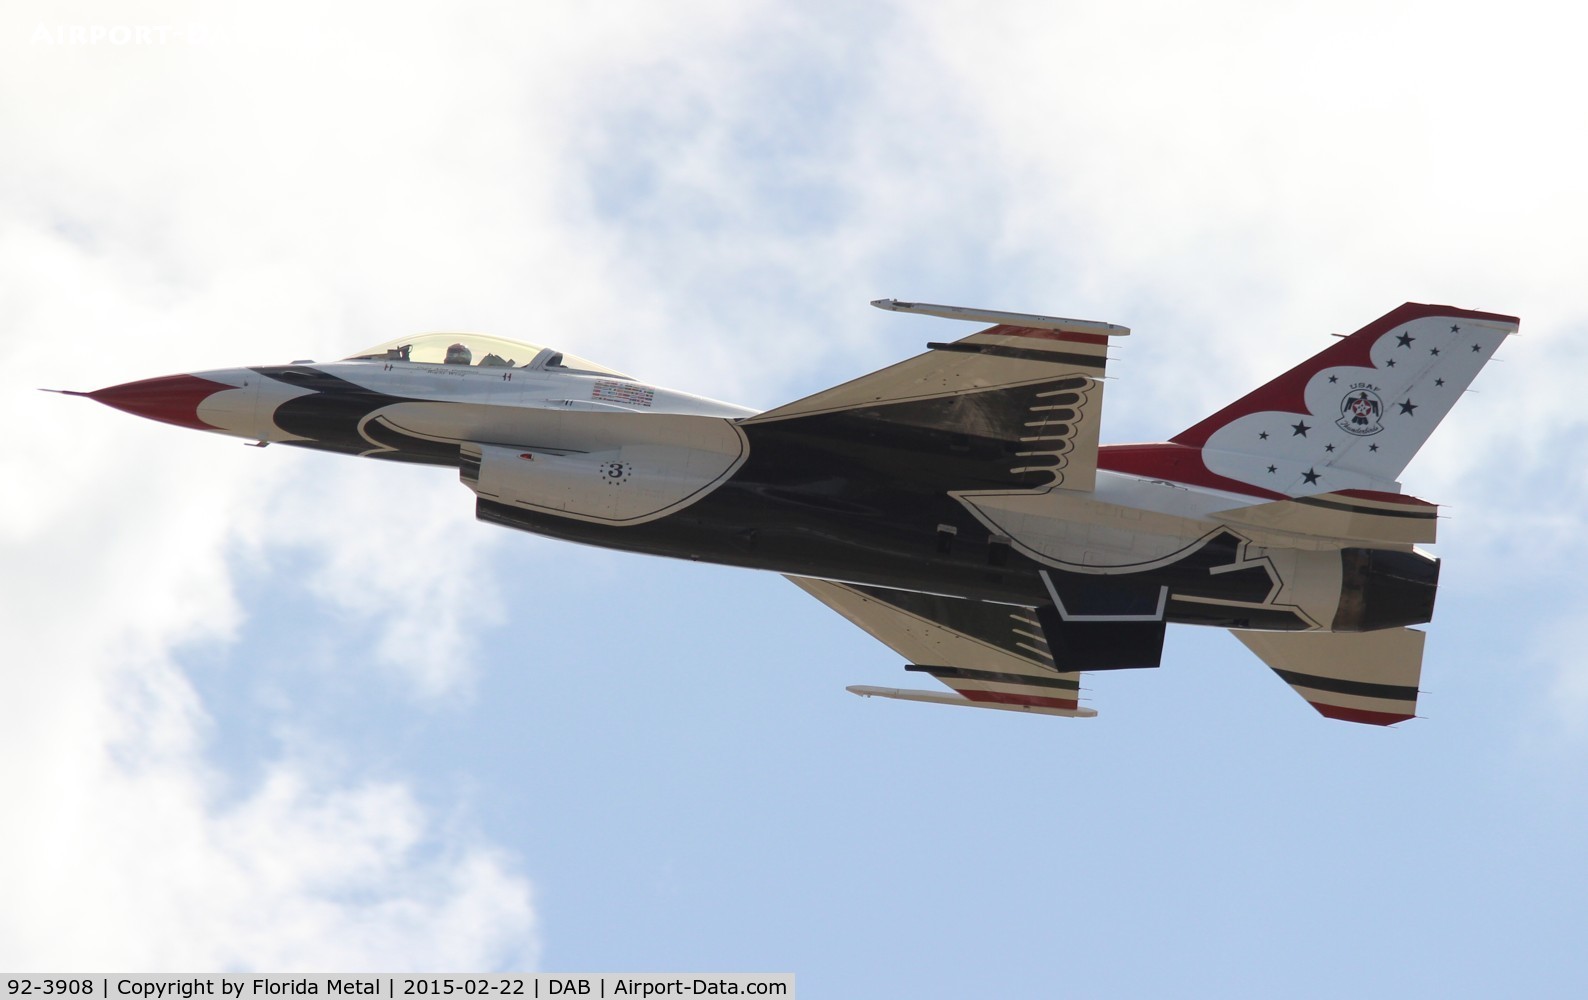 92-3908, 1992 General Dynamics F-16CM Fighting Falcon C/N CC-150, Thunderbirds